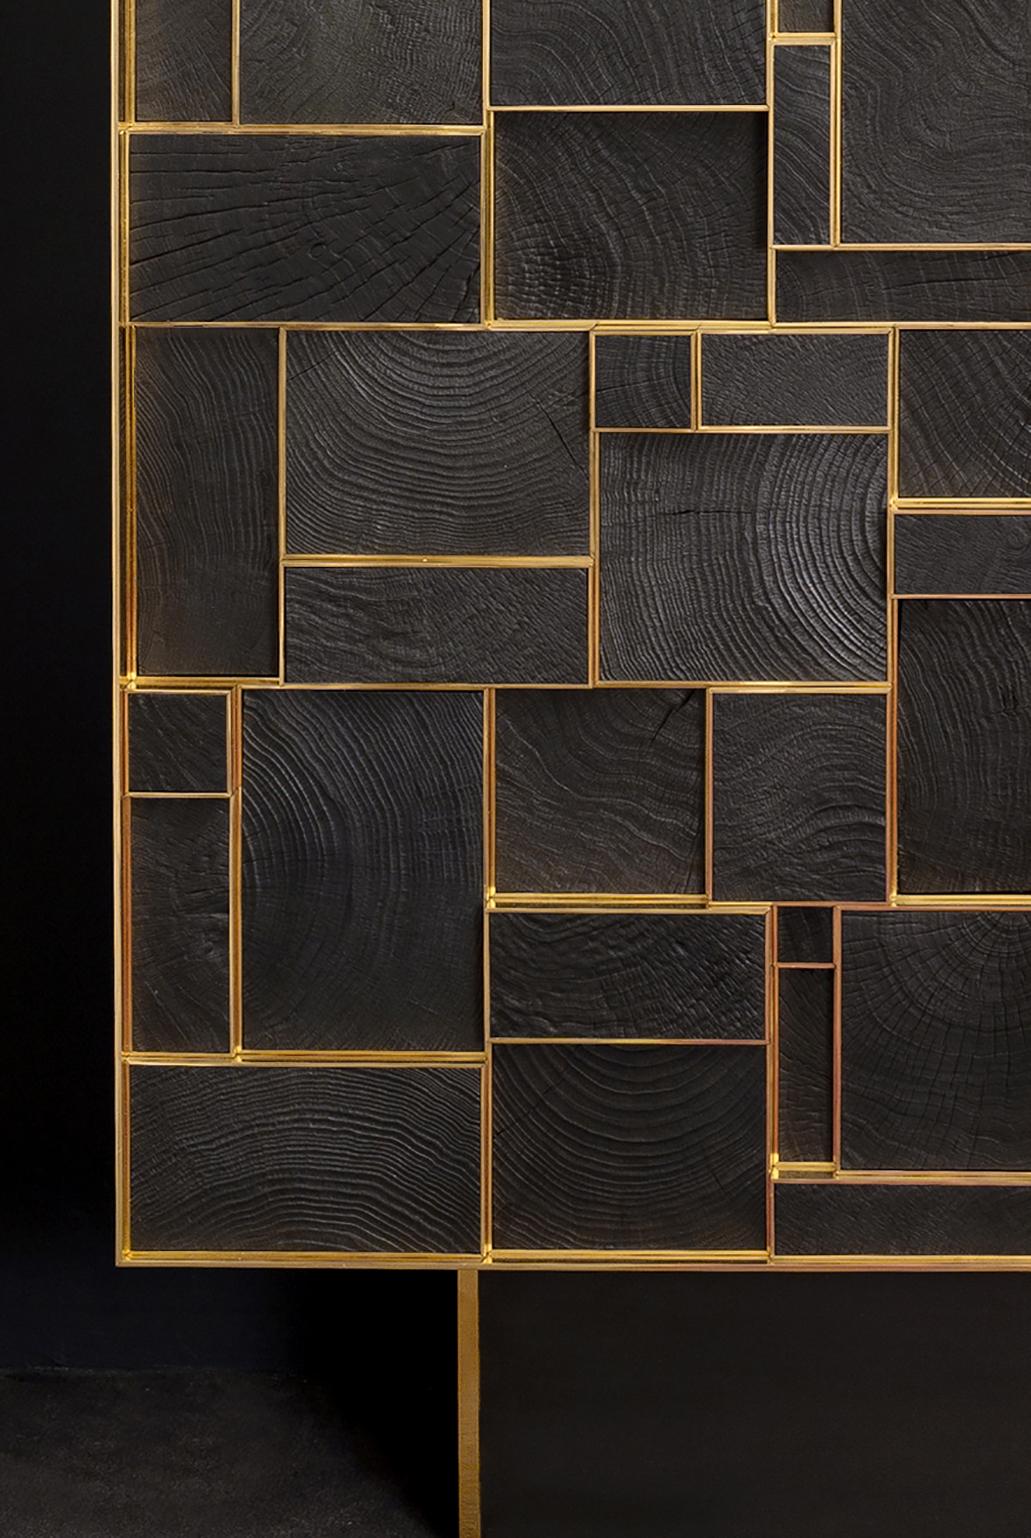 Ce meuble d'étourdissement est fabriqué à la main par Franck Chartrain, un célèbre artiste-designer français.

Le bronze poli encadre plusieurs sections de bois carbonisé. 
Des cubes émergent des portes à des hauteurs différentes.
Les poignées sont